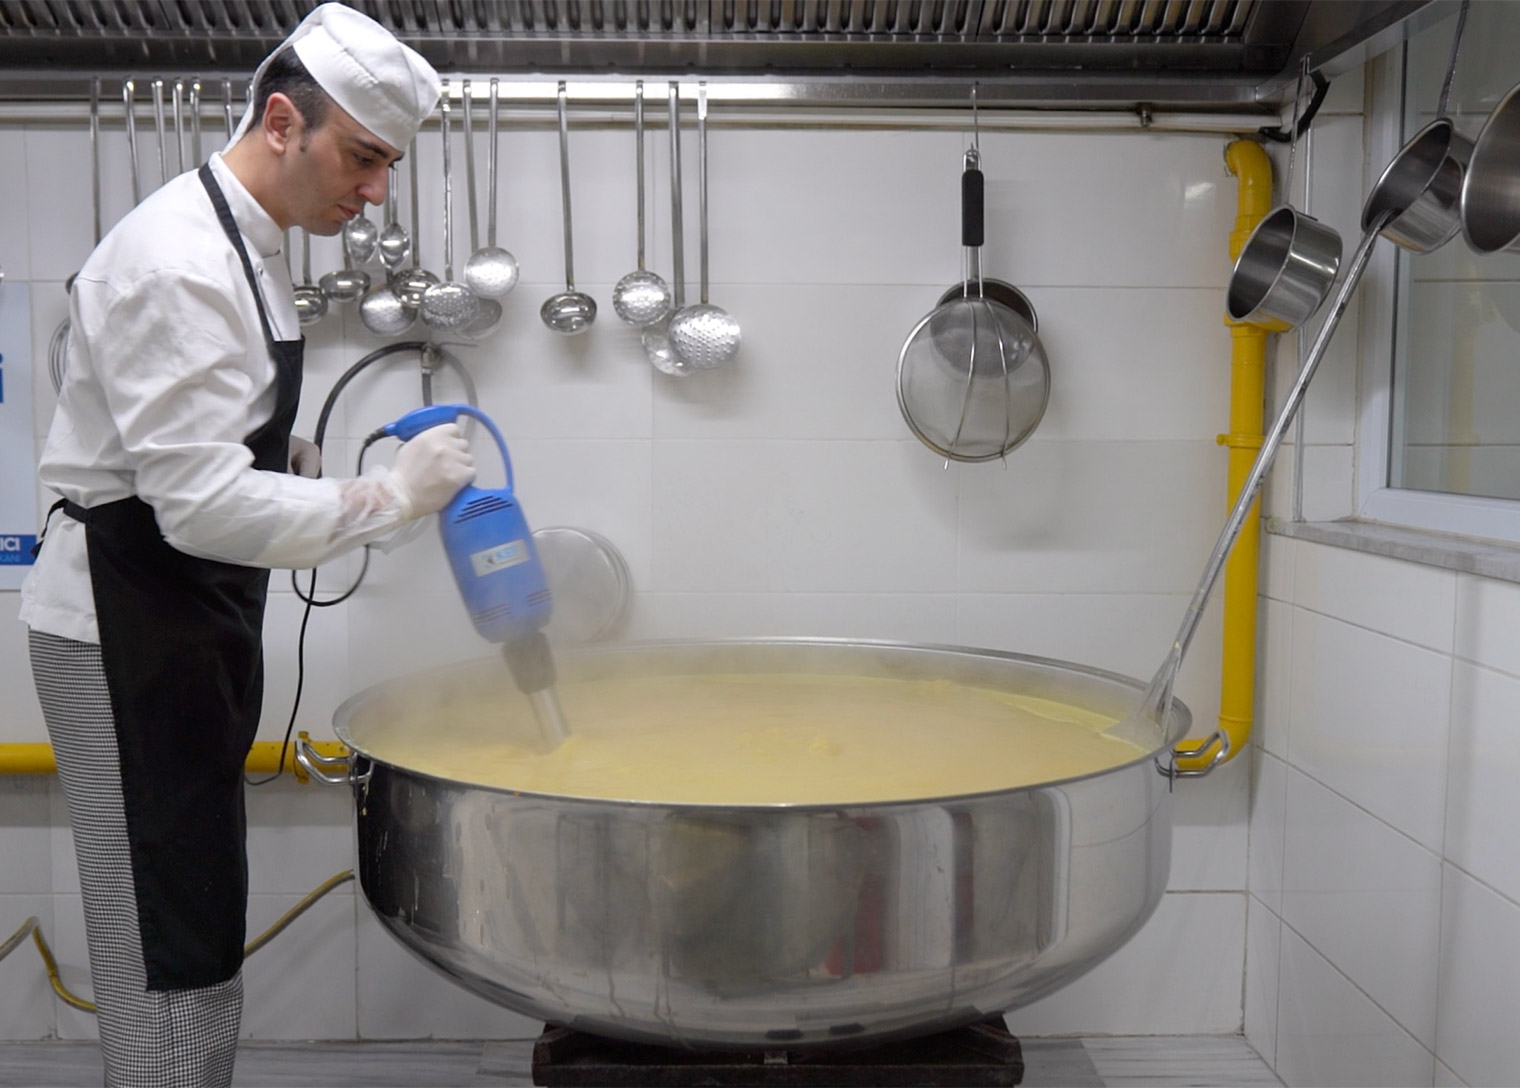 Tuzla’da Aşevinde Pişen Sıcak Yemekler, İhtiyaç Sahibi Ailelere Ulaşıyor